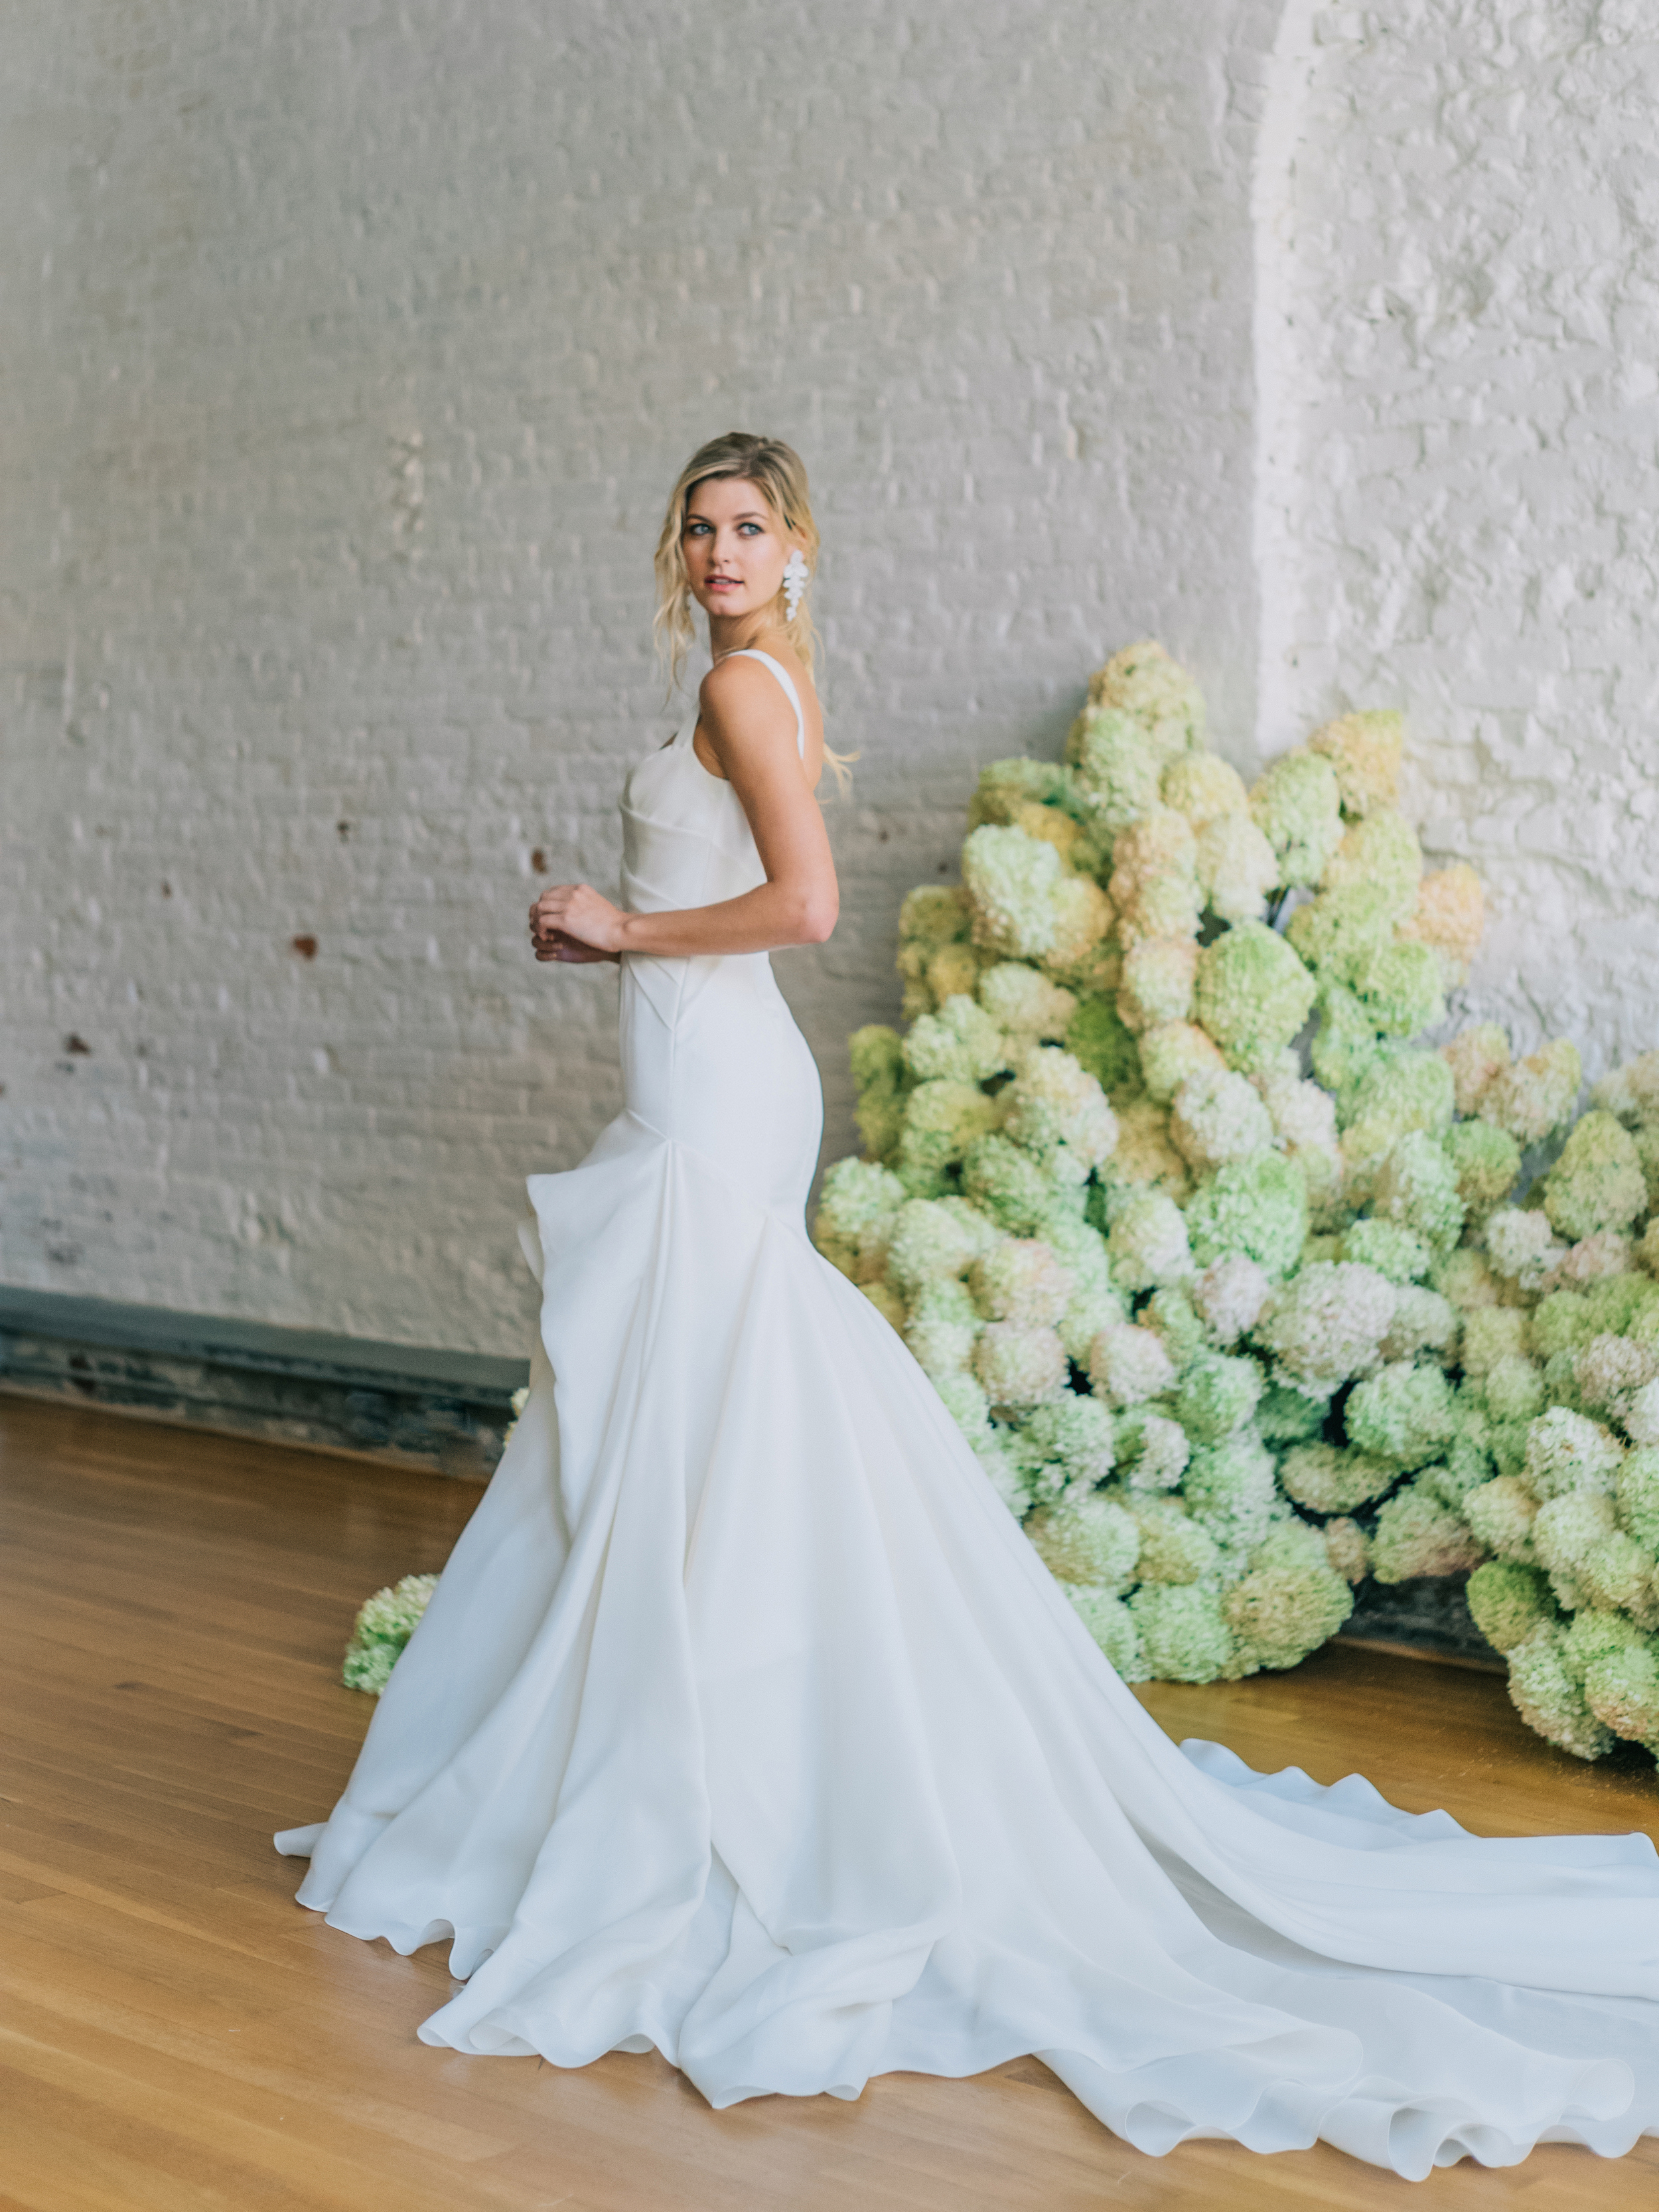 Maquette fit and flare silk gazar wedding gown by bridal designer Carol Hannah6.jpg